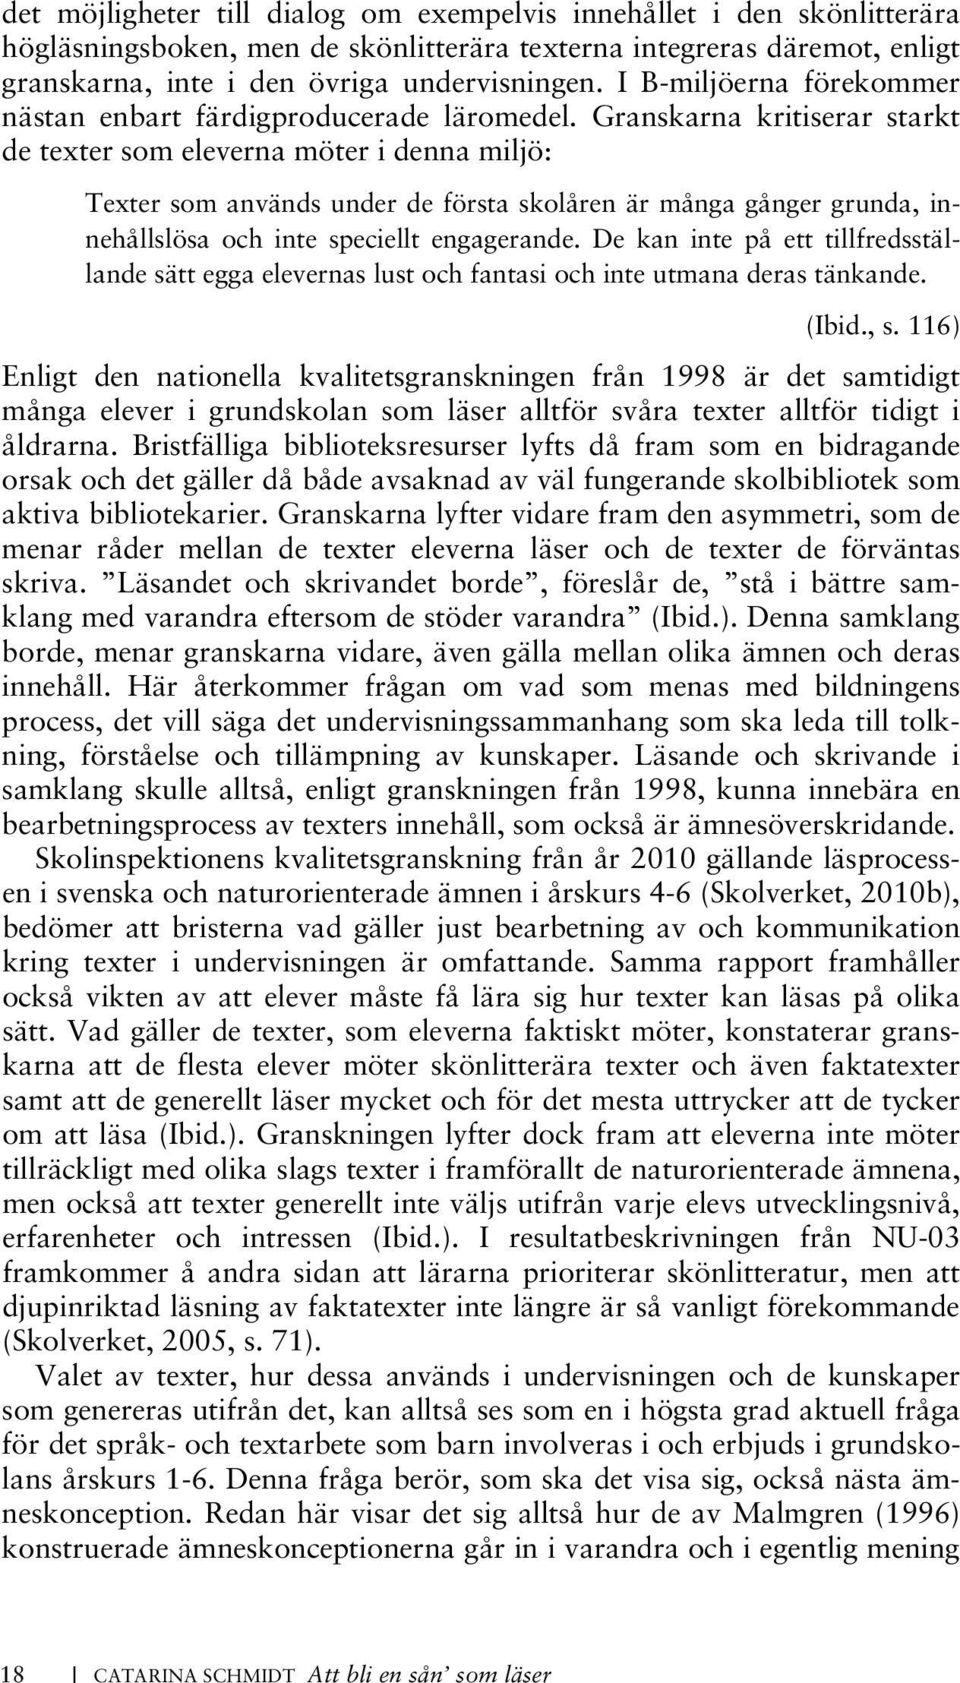 I min tolkning av Malmgrens tre ämneskonstruktioner ser jag också det som fullt möjligt att de två förstnämnda kan ingå i den tredje och sista konceptionen; svenska som erfarenhetspedagogiskt ämne.